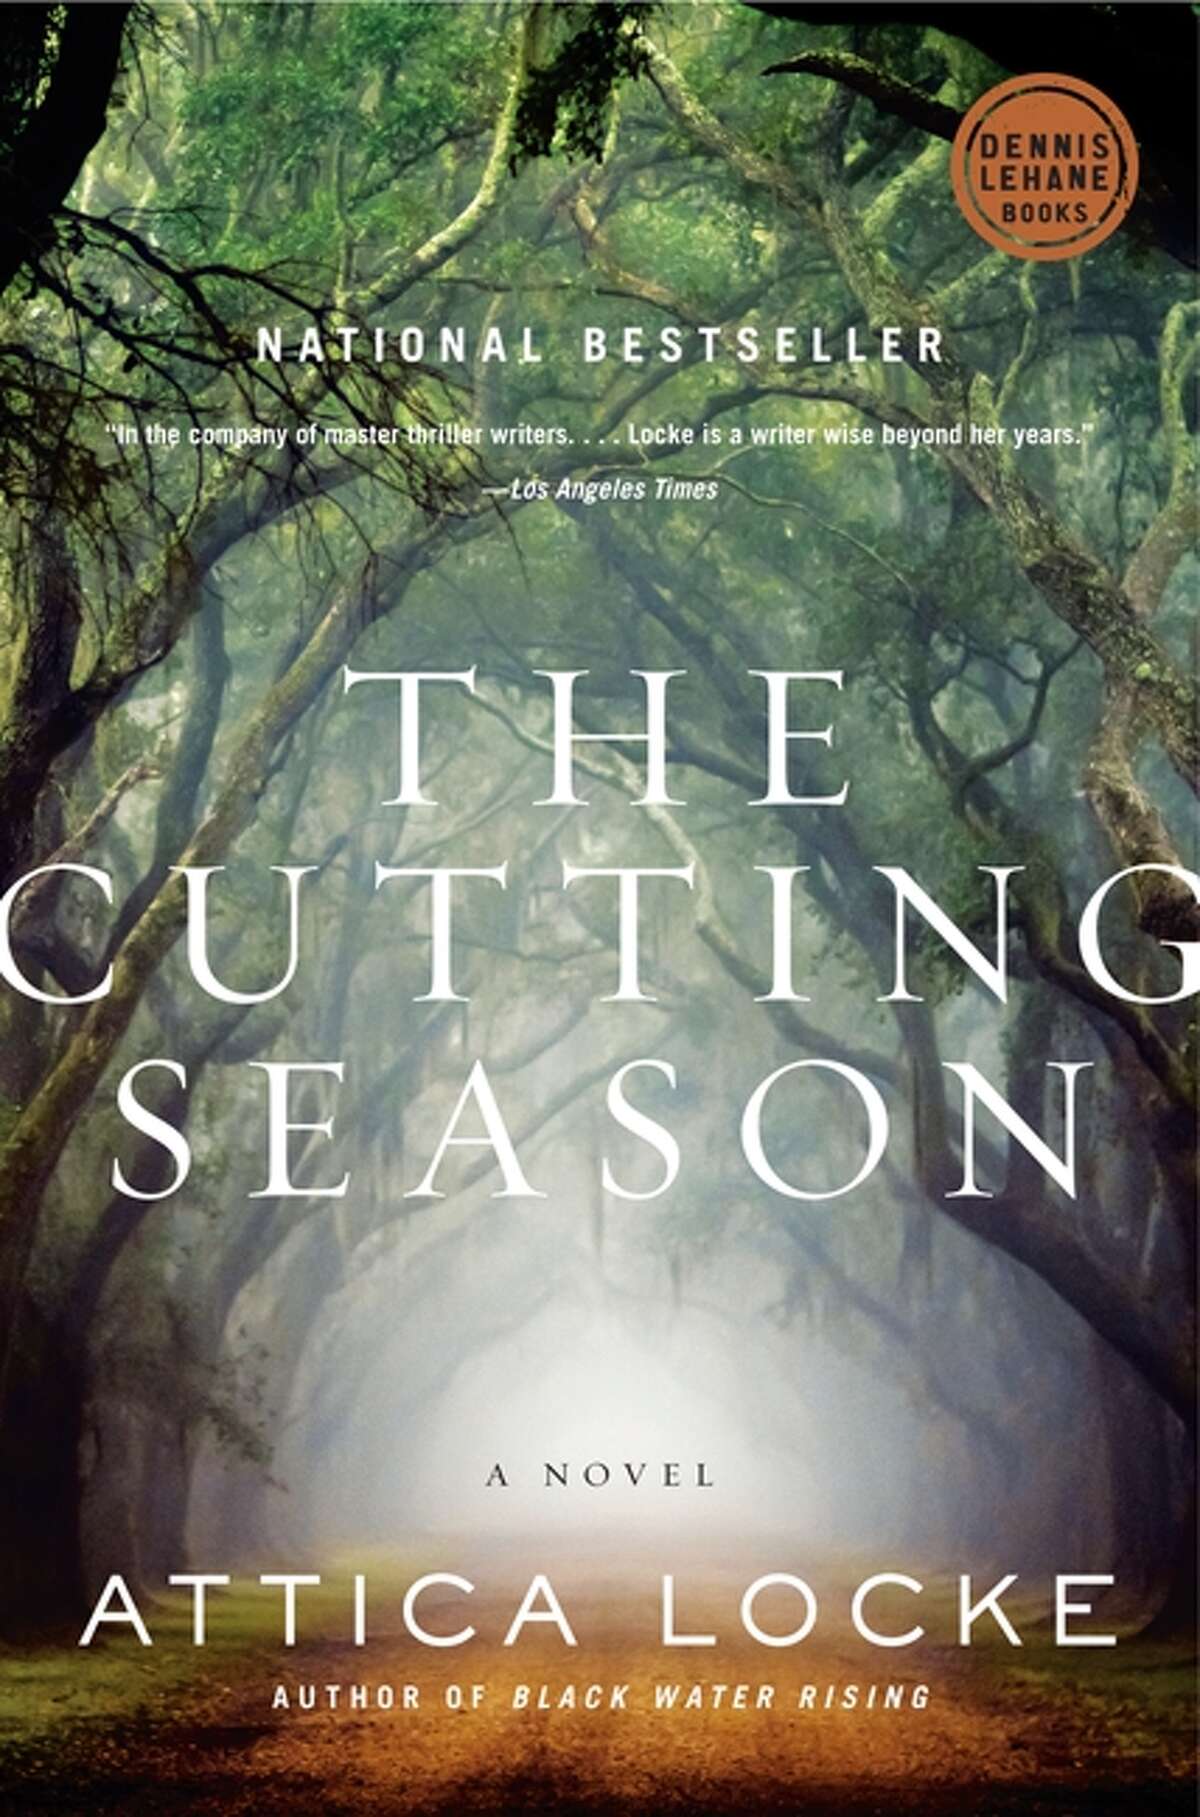 The Cutting Season by Attica Locke